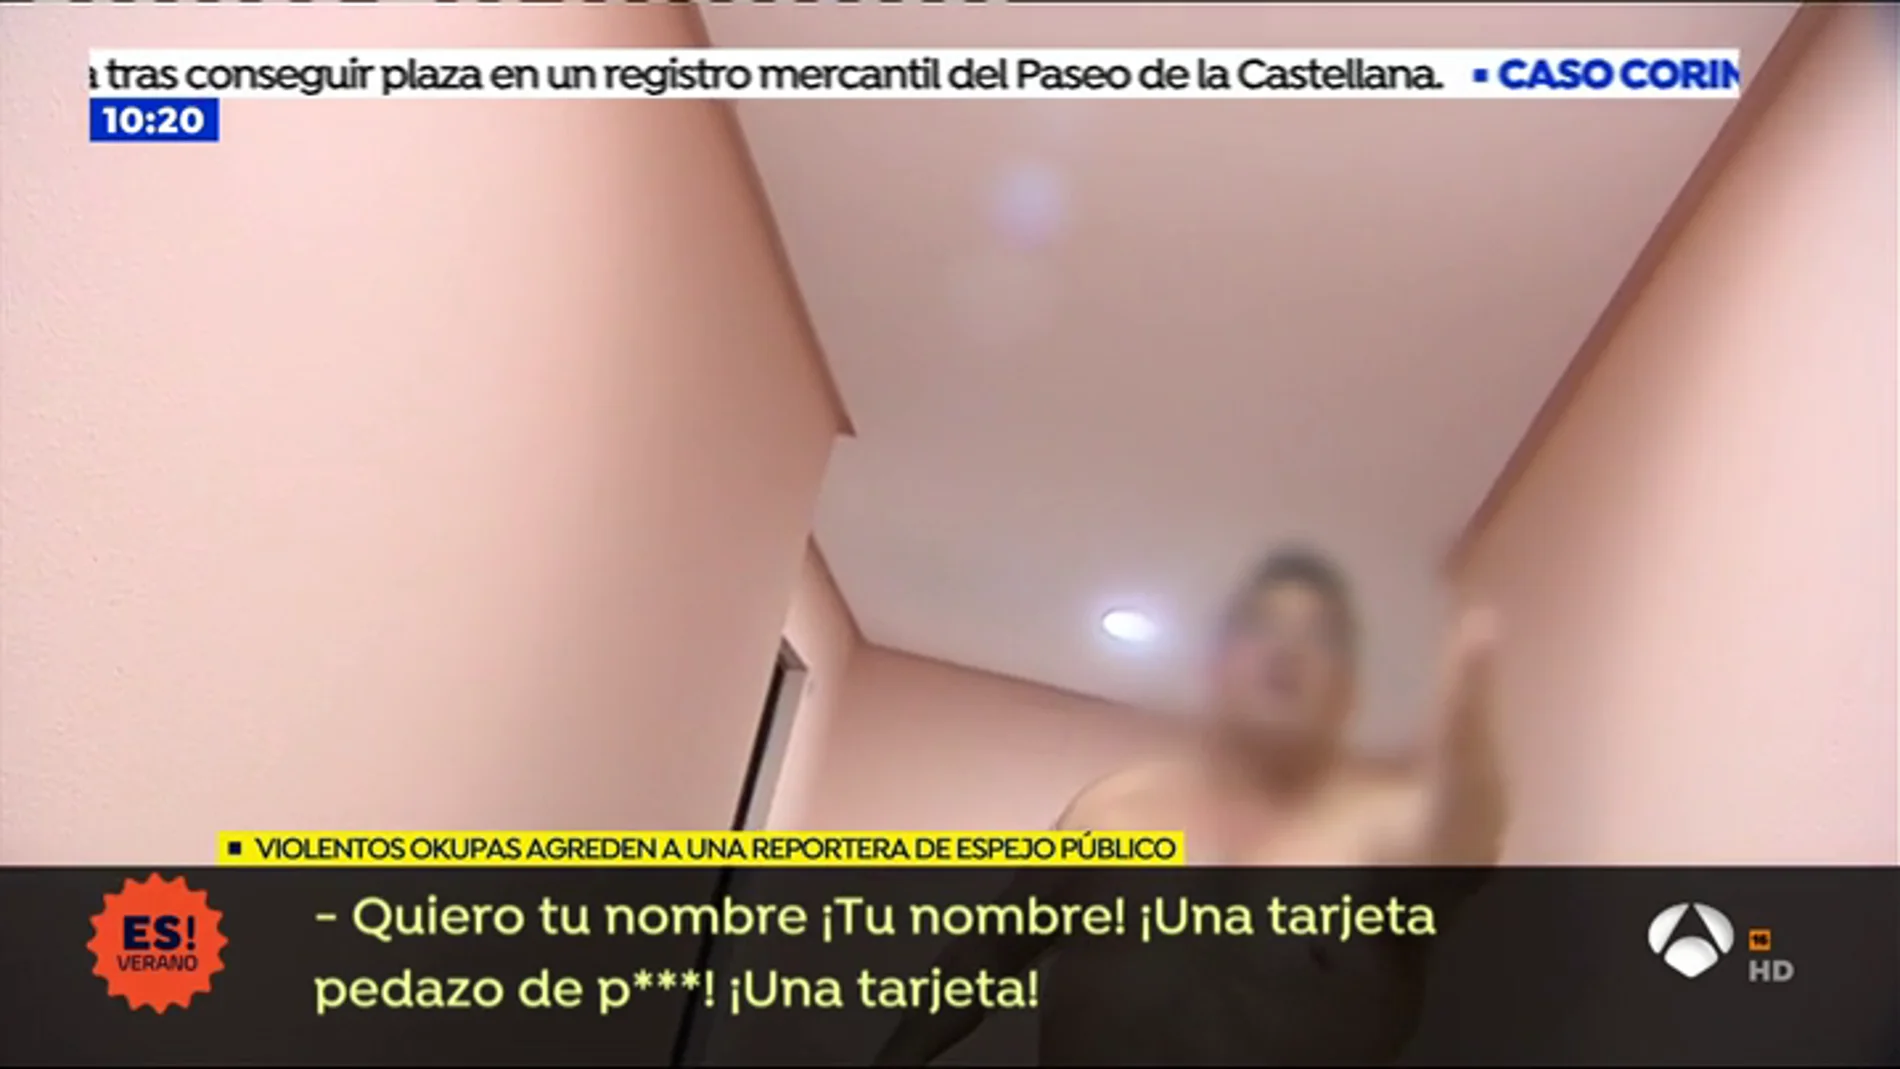 Unos okupas agreden a una reportera de Espejo Público: "Quiero tu nombre, puta de mierda"